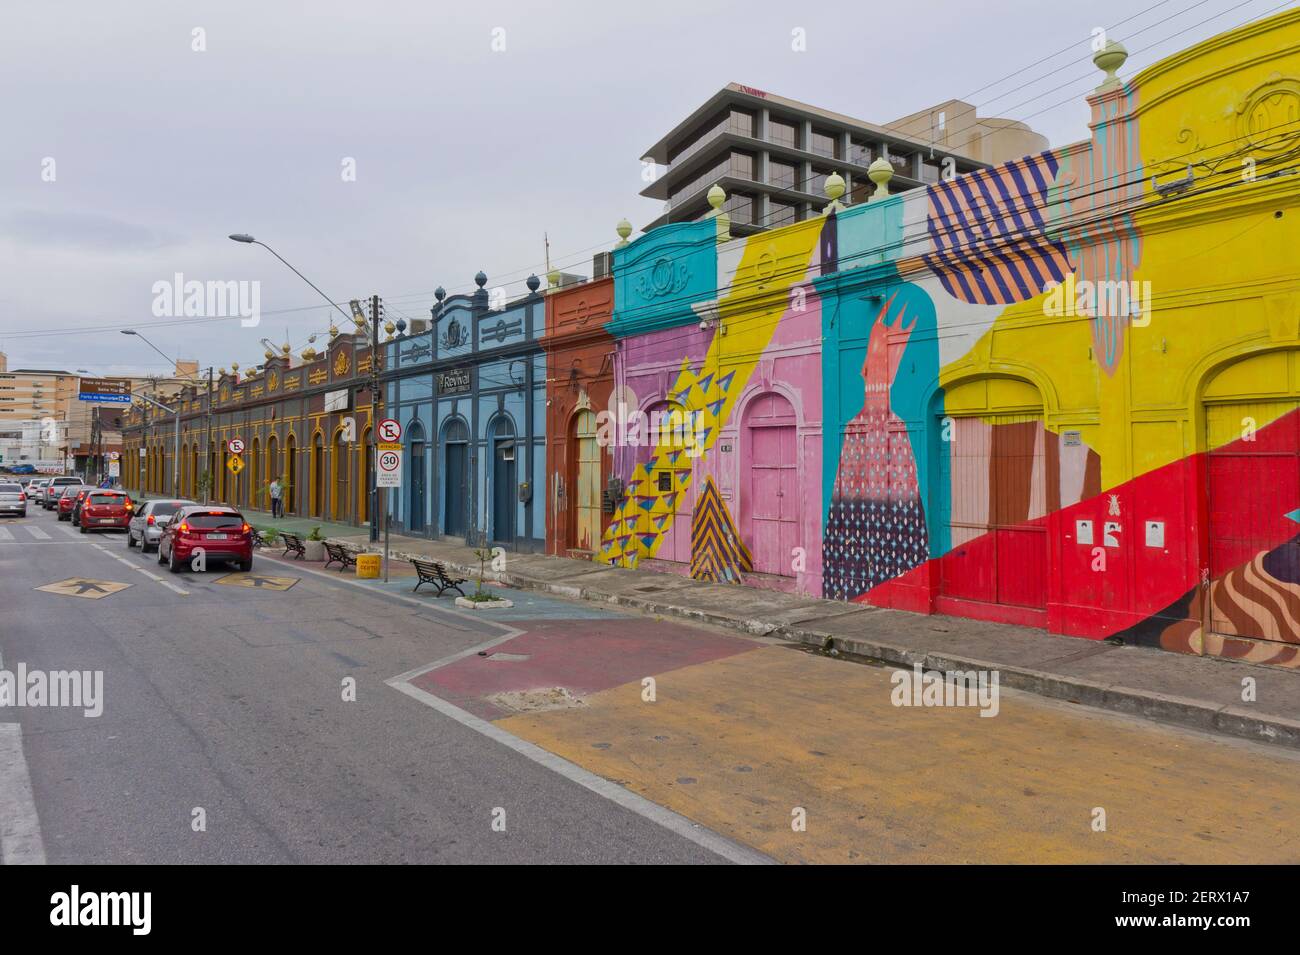 Fortaleza, vue sur la rue de la vieille ville avec des bâtiments coloniaux colorés, Brésil, Amérique du Sud Banque D'Images